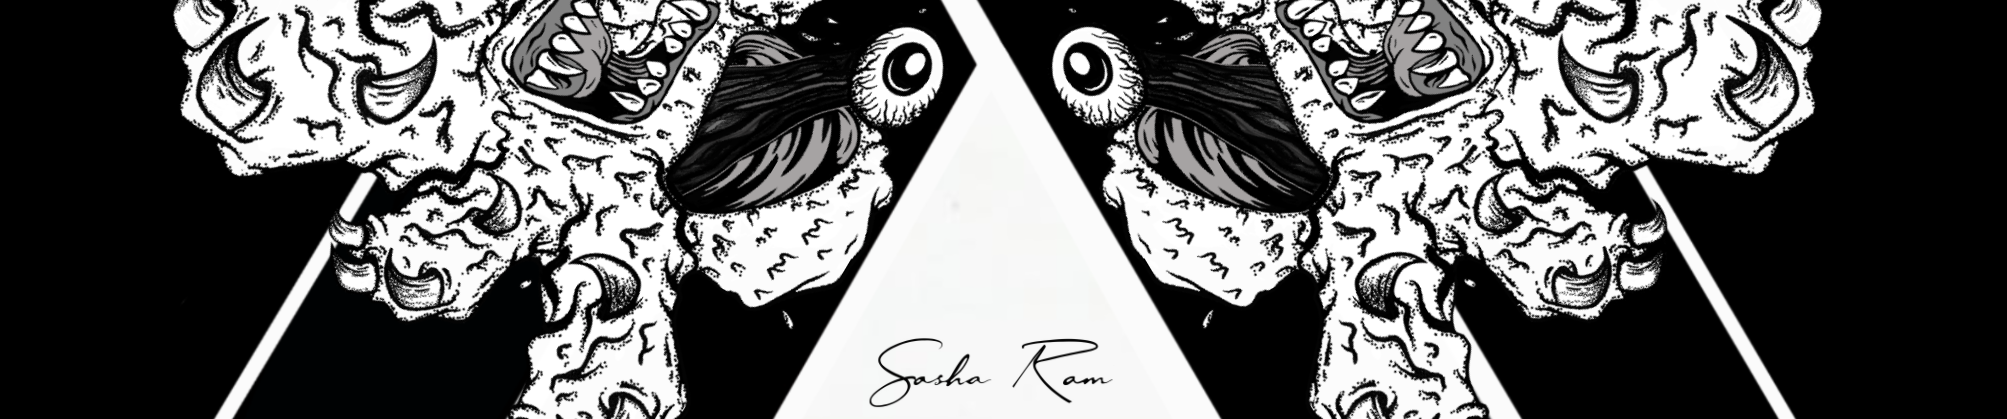 Sasha Ram's profile banner